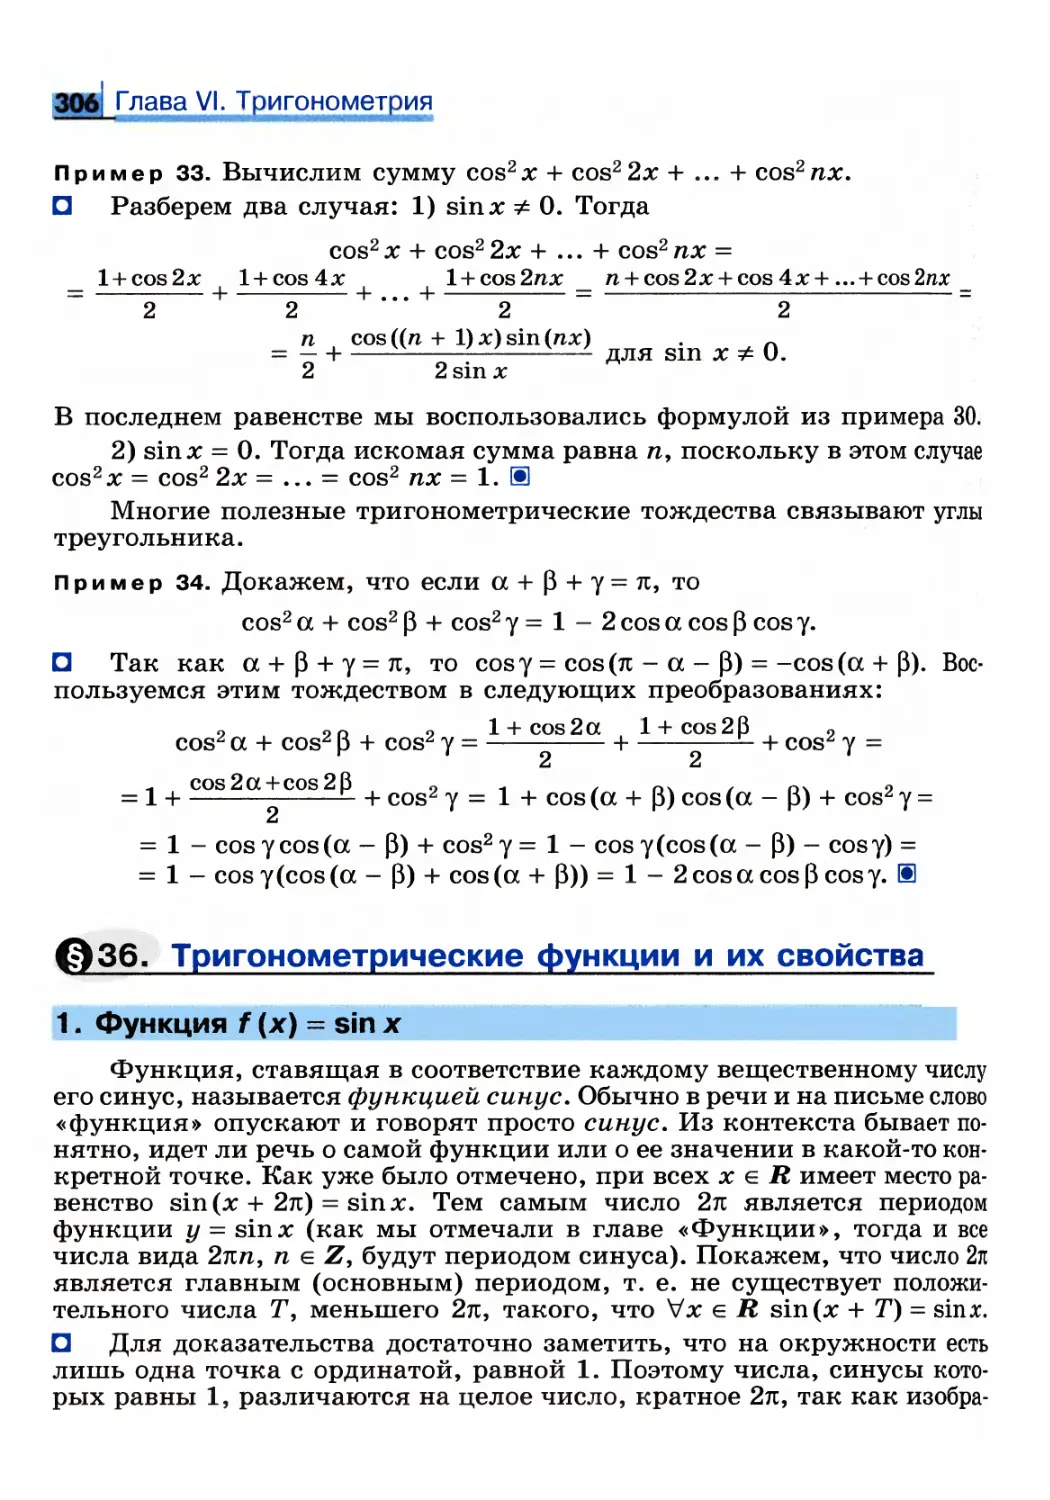 § 36. Тригонометрические функции и их свойства